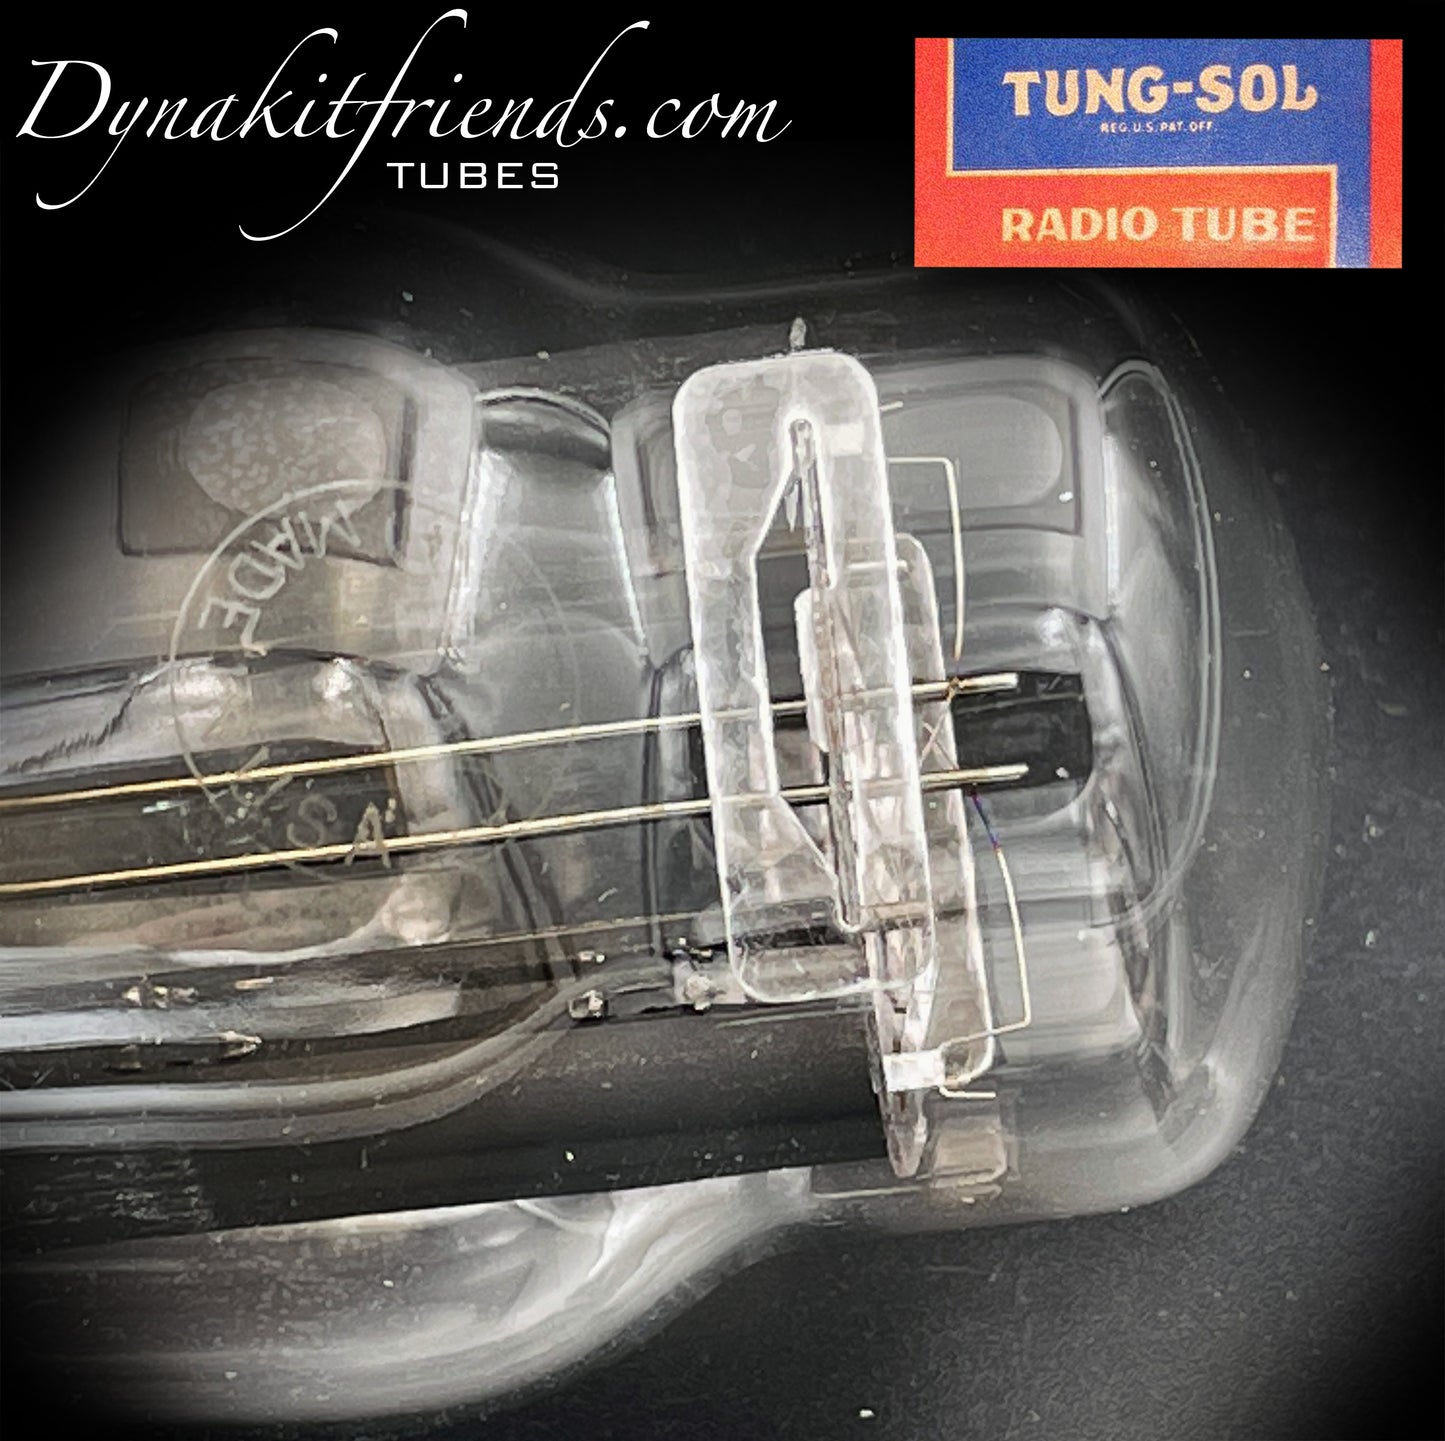 5Y3G (5Z2P) TUNG-SOL NOS Filamentos colgantes Placas acanaladas negras Rectificador de tubo getter de lámina Hecho en EE. UU.